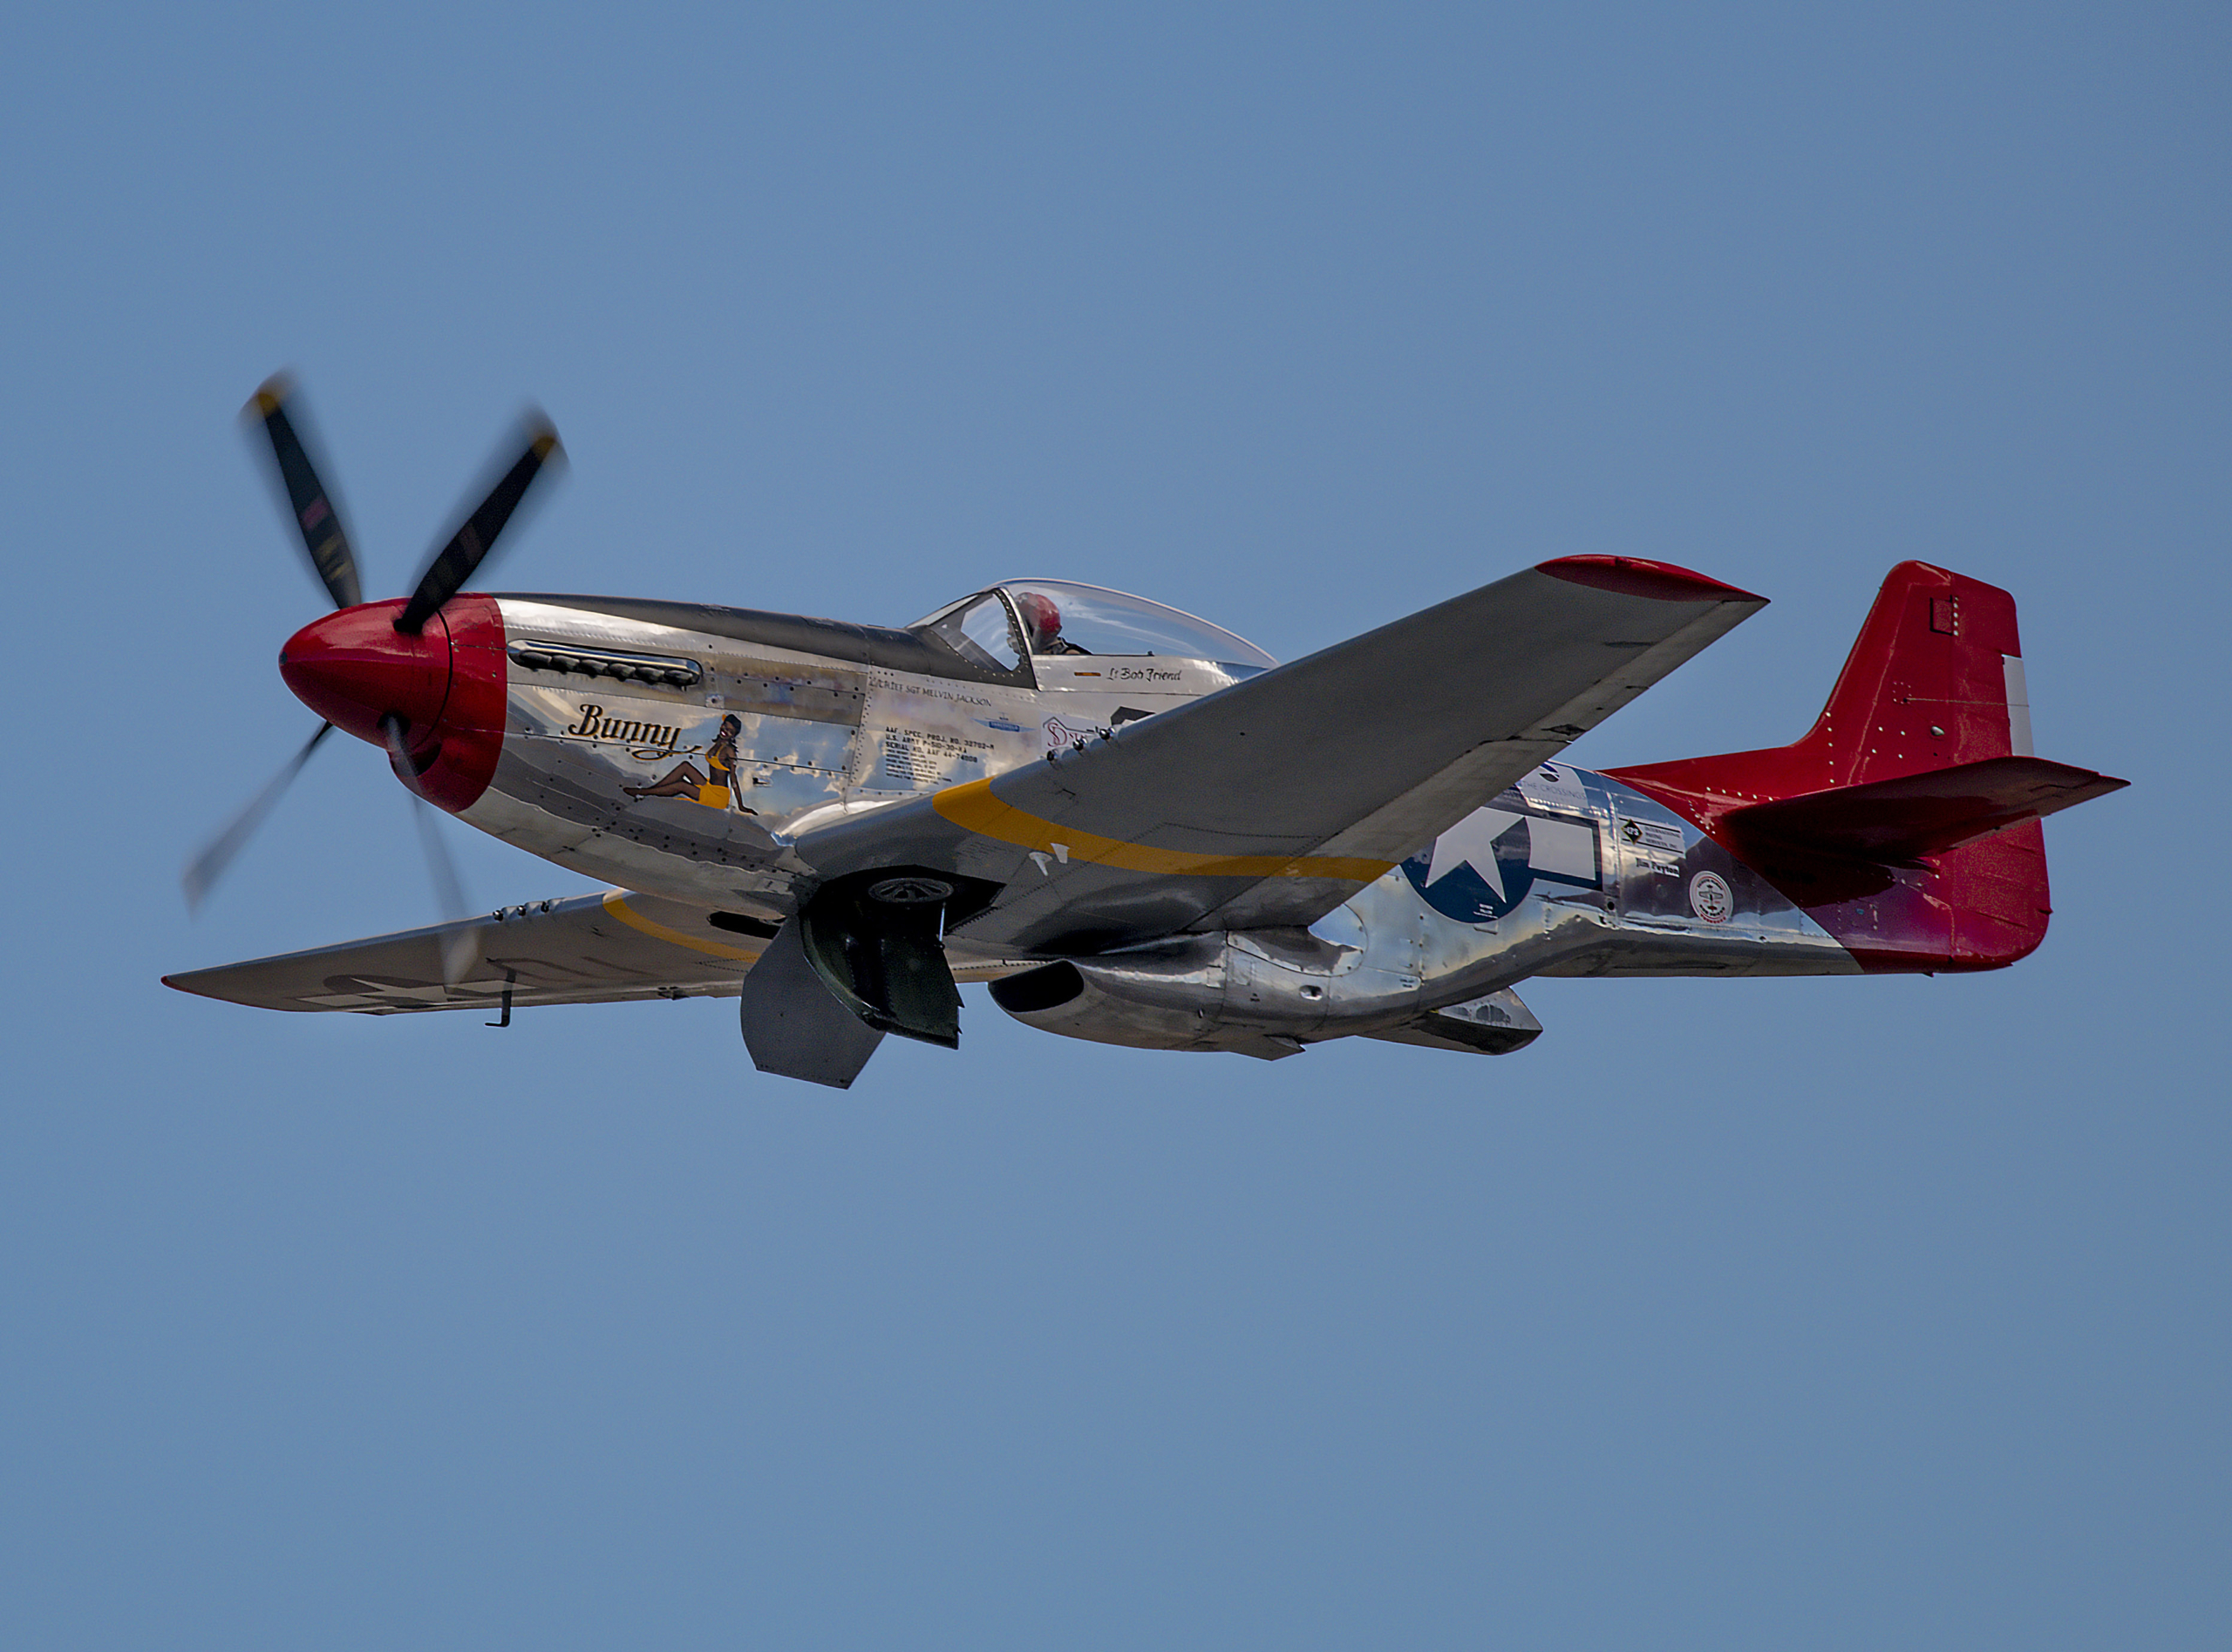 P-51 Mustang “Bunny” – Warbird Wednesday Episode #1